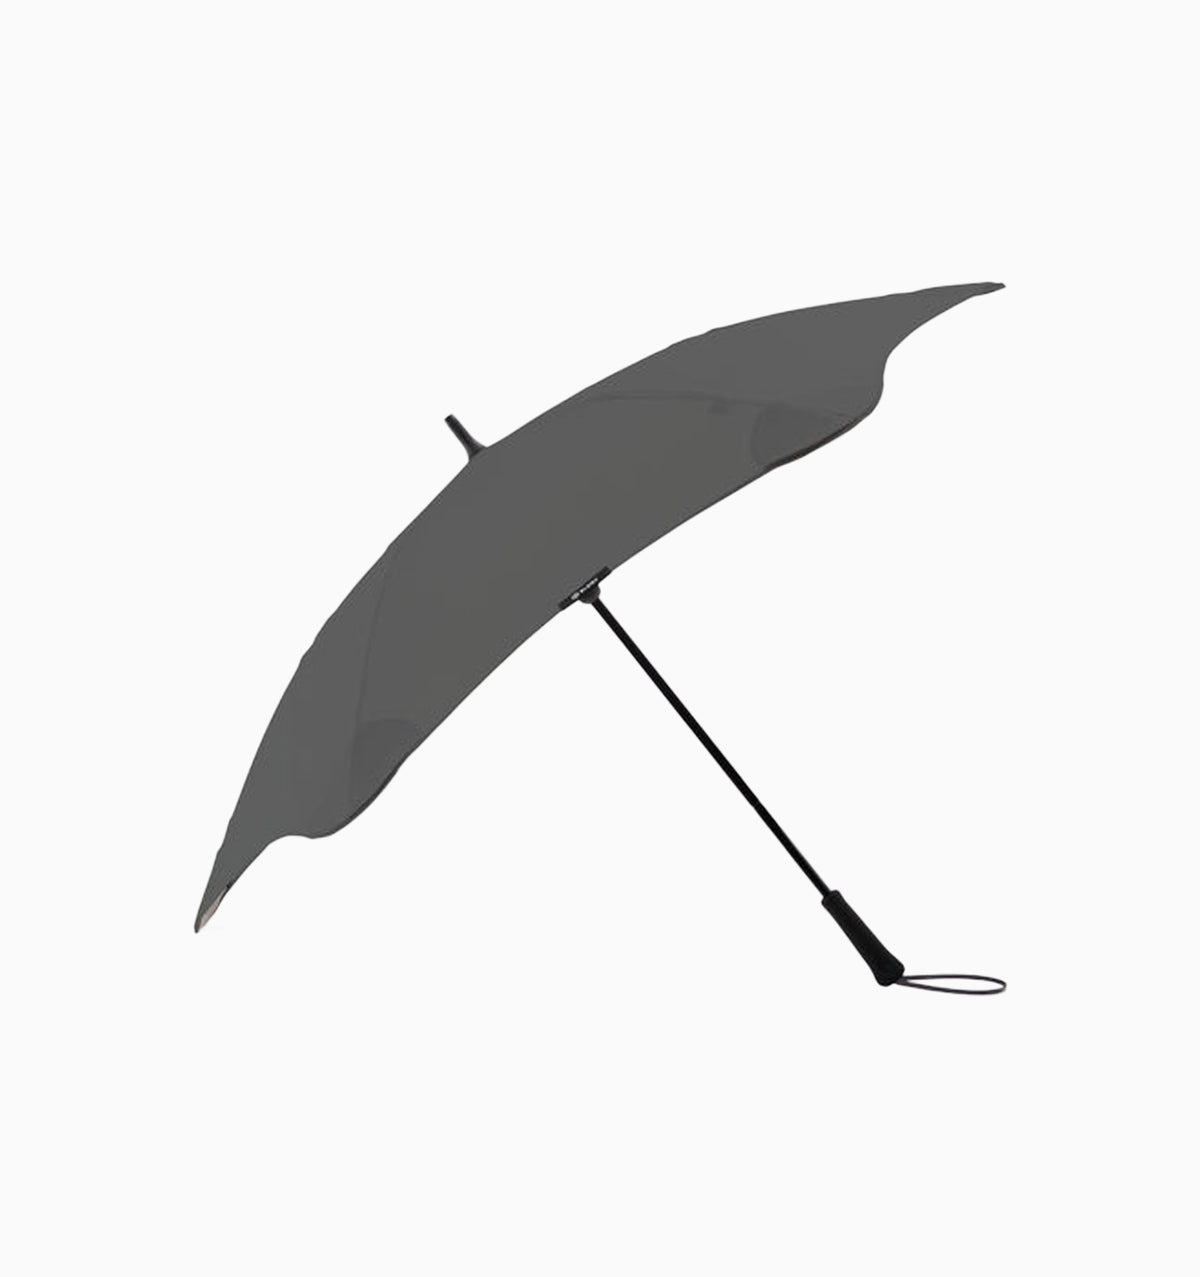 Blunt Exec Umbrella - Charcoal